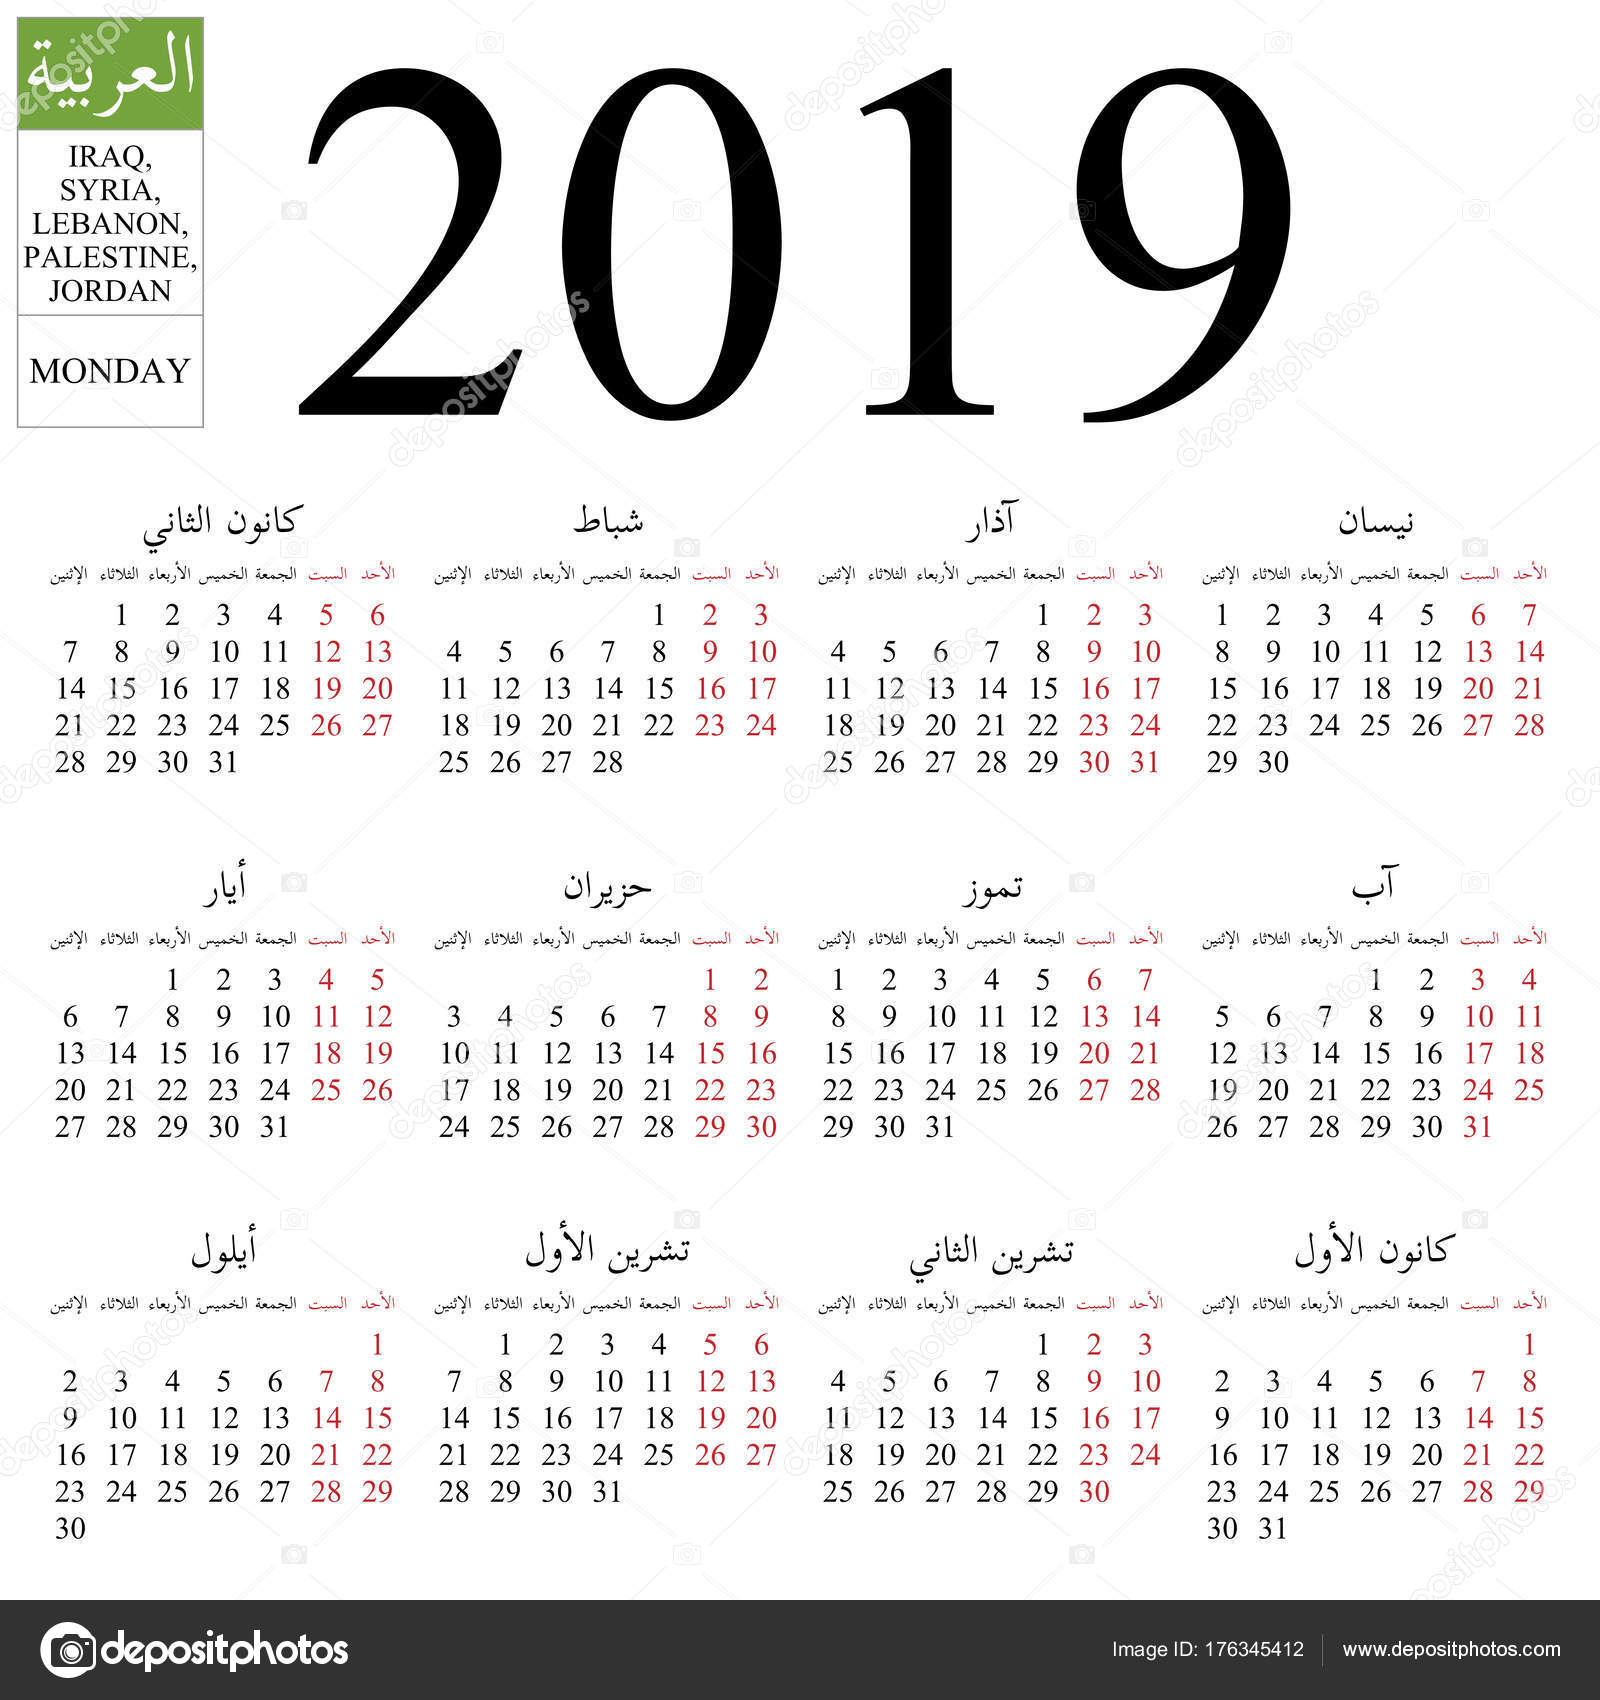 2019 jordan calendar cheap online